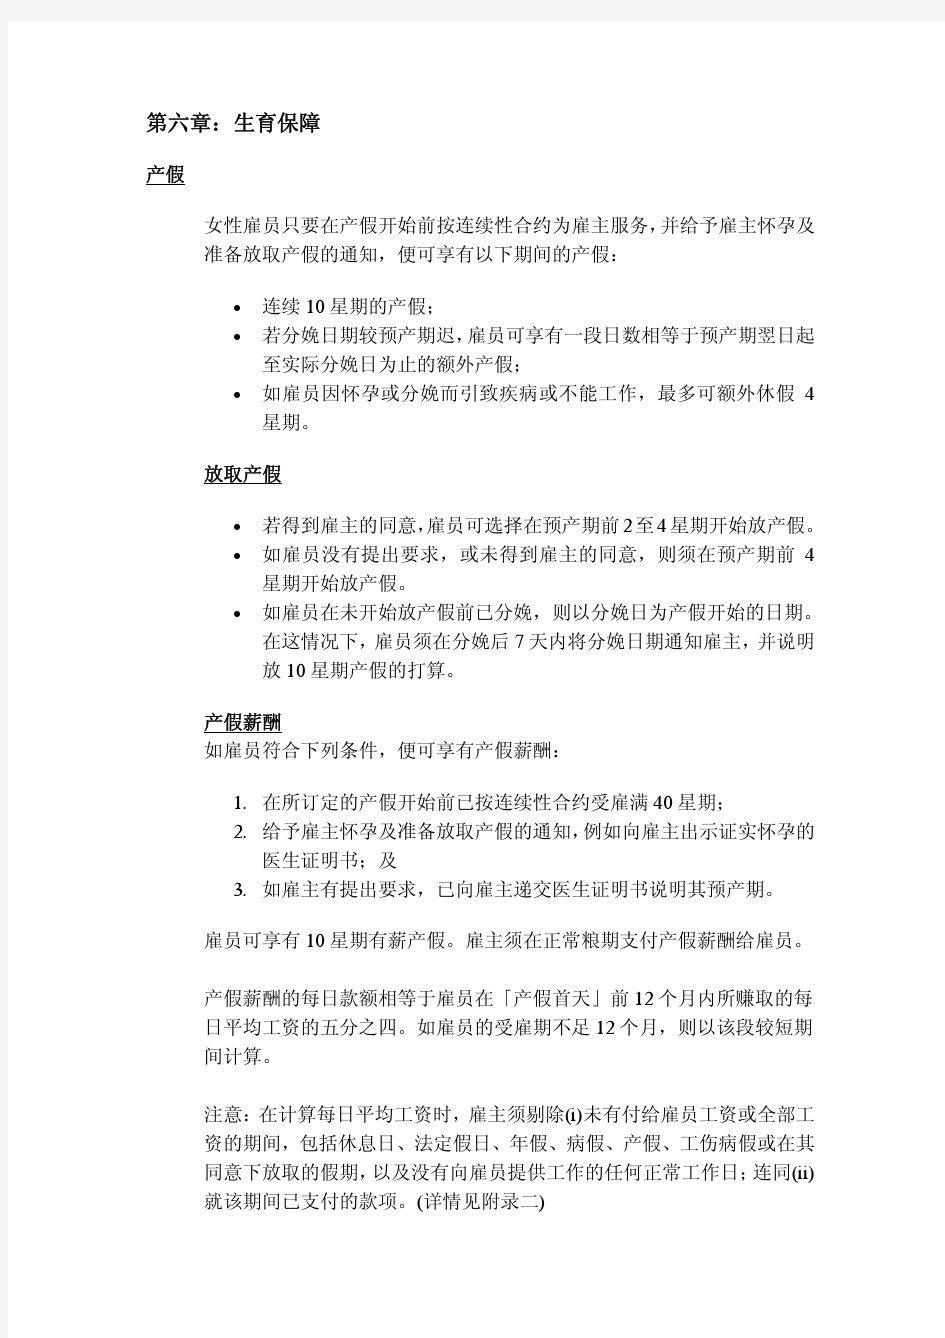 香港劳动法关于怀孕妇女劳动权利的简要说明(中文版)